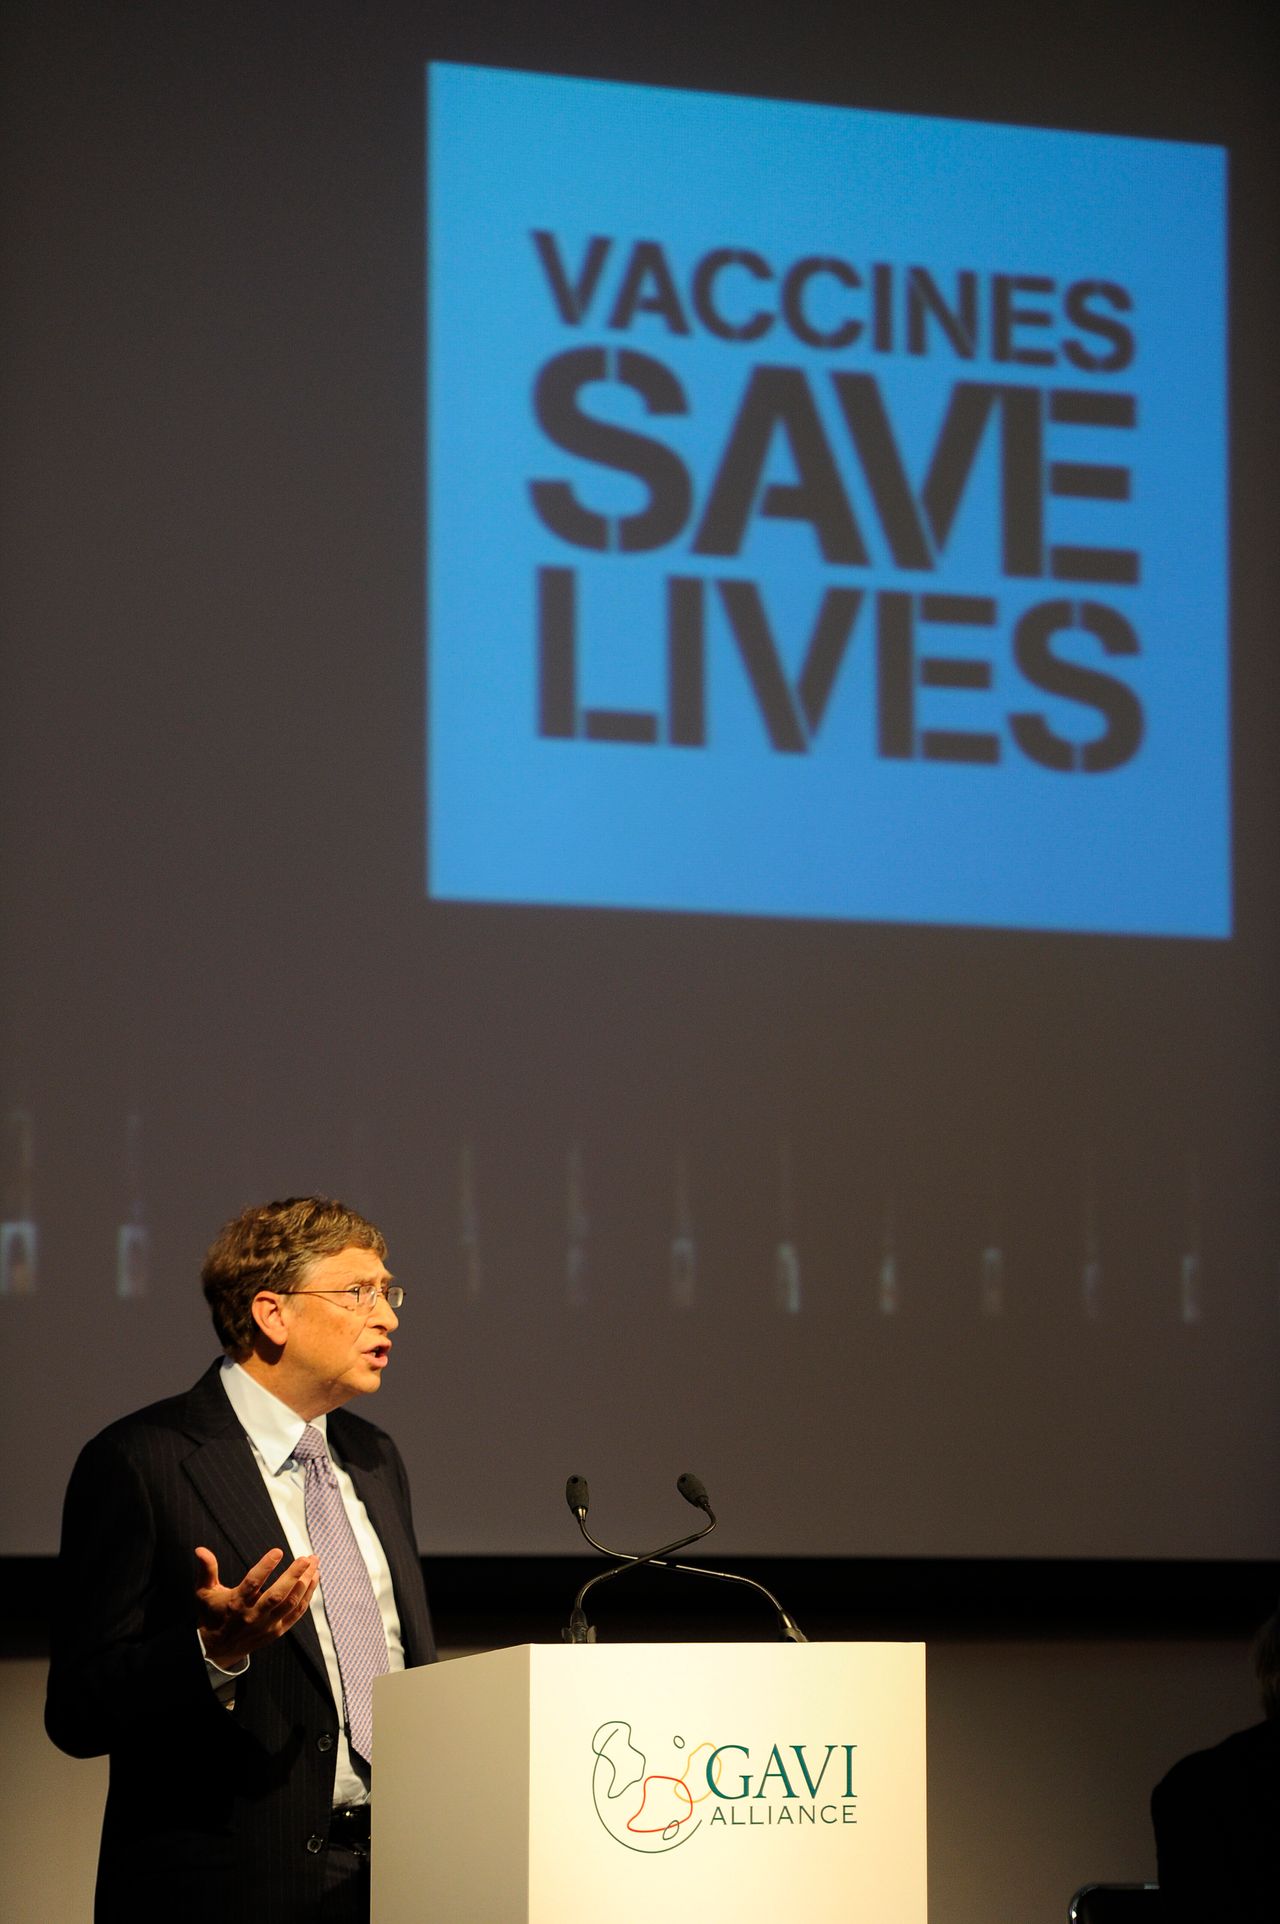 Gates s'adressant à Gavi Alliance, un partenariat public-privé visant à accroître la vaccination dans les pays les plus pauvres du monde.